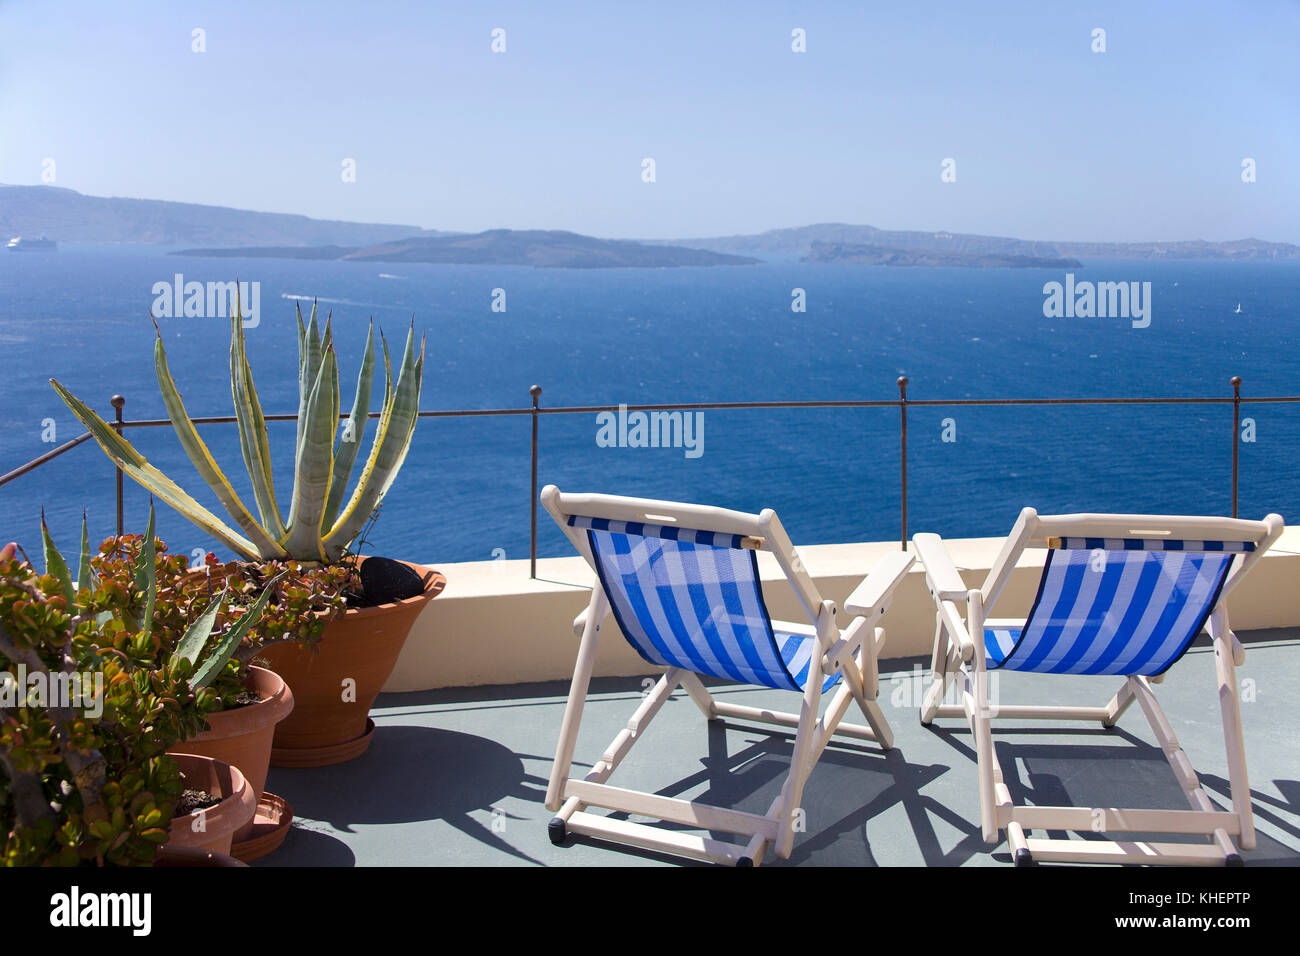 Deux chaises sur un toit-terrasse avec vue sur la mer, Oia, Santorin, Cyclades, l'île de la mer Égée, Grèce Banque D'Images